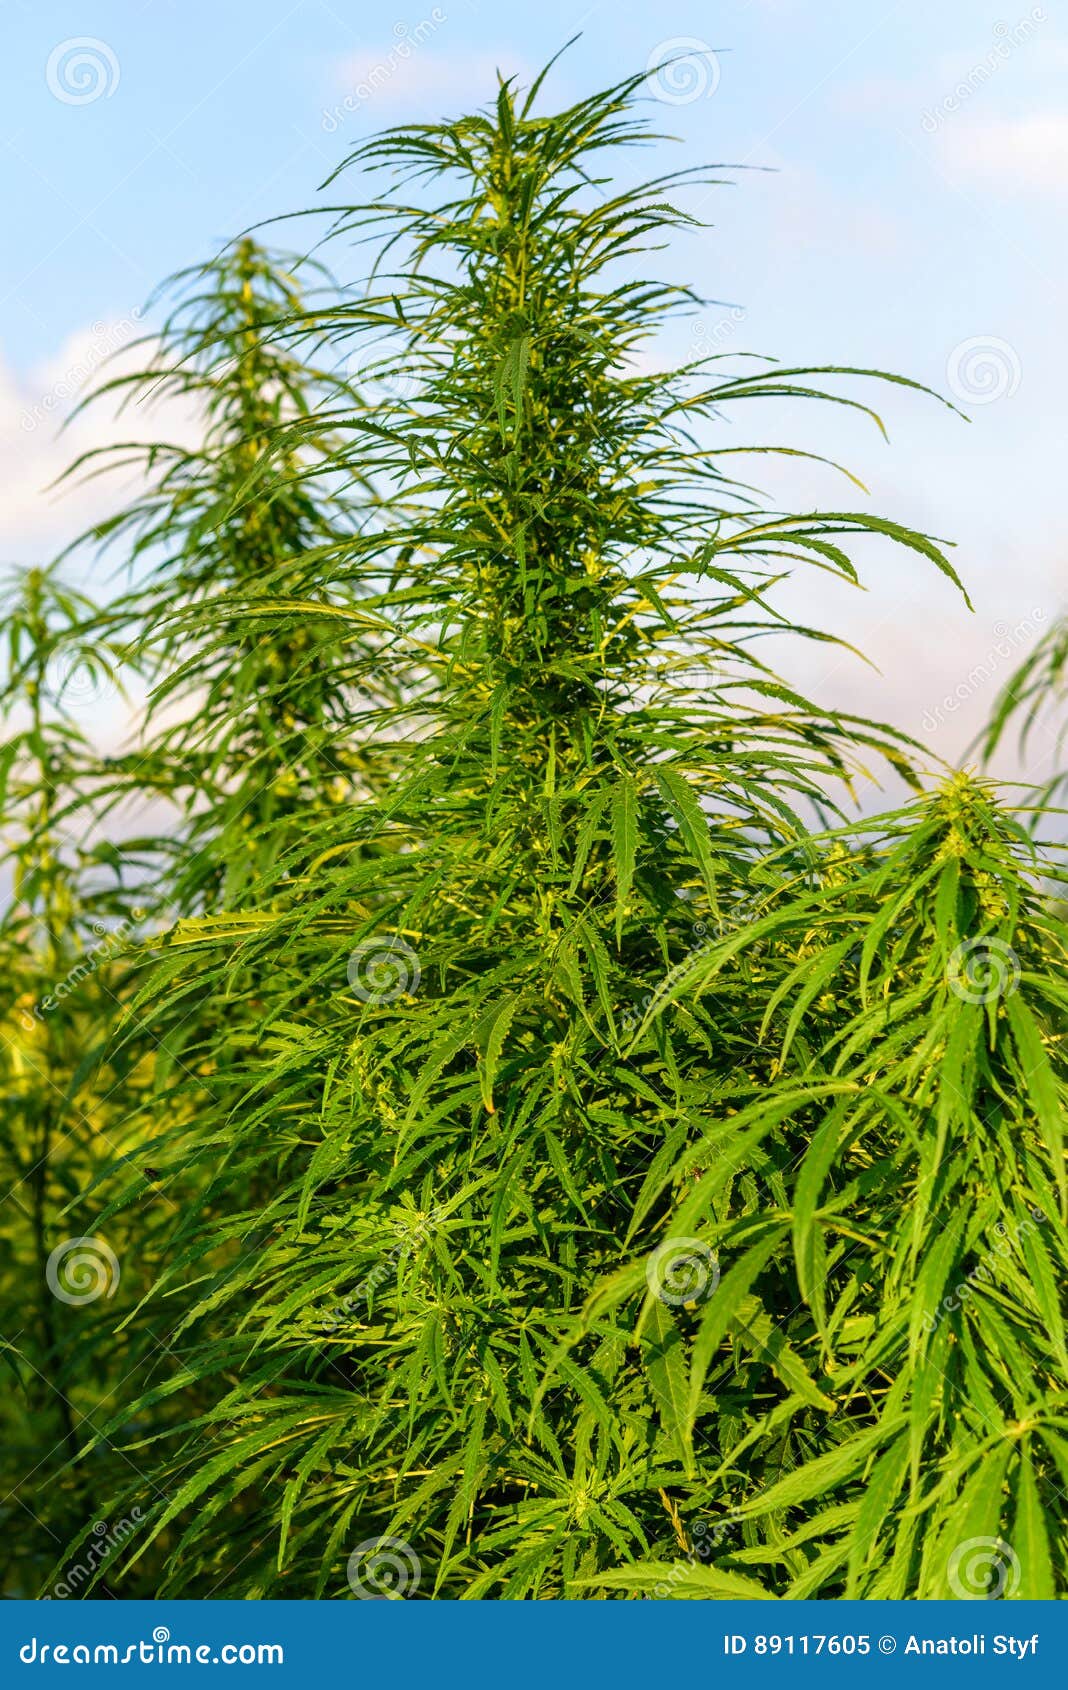 Рост марихуаны фото вянут листья на конопле почему